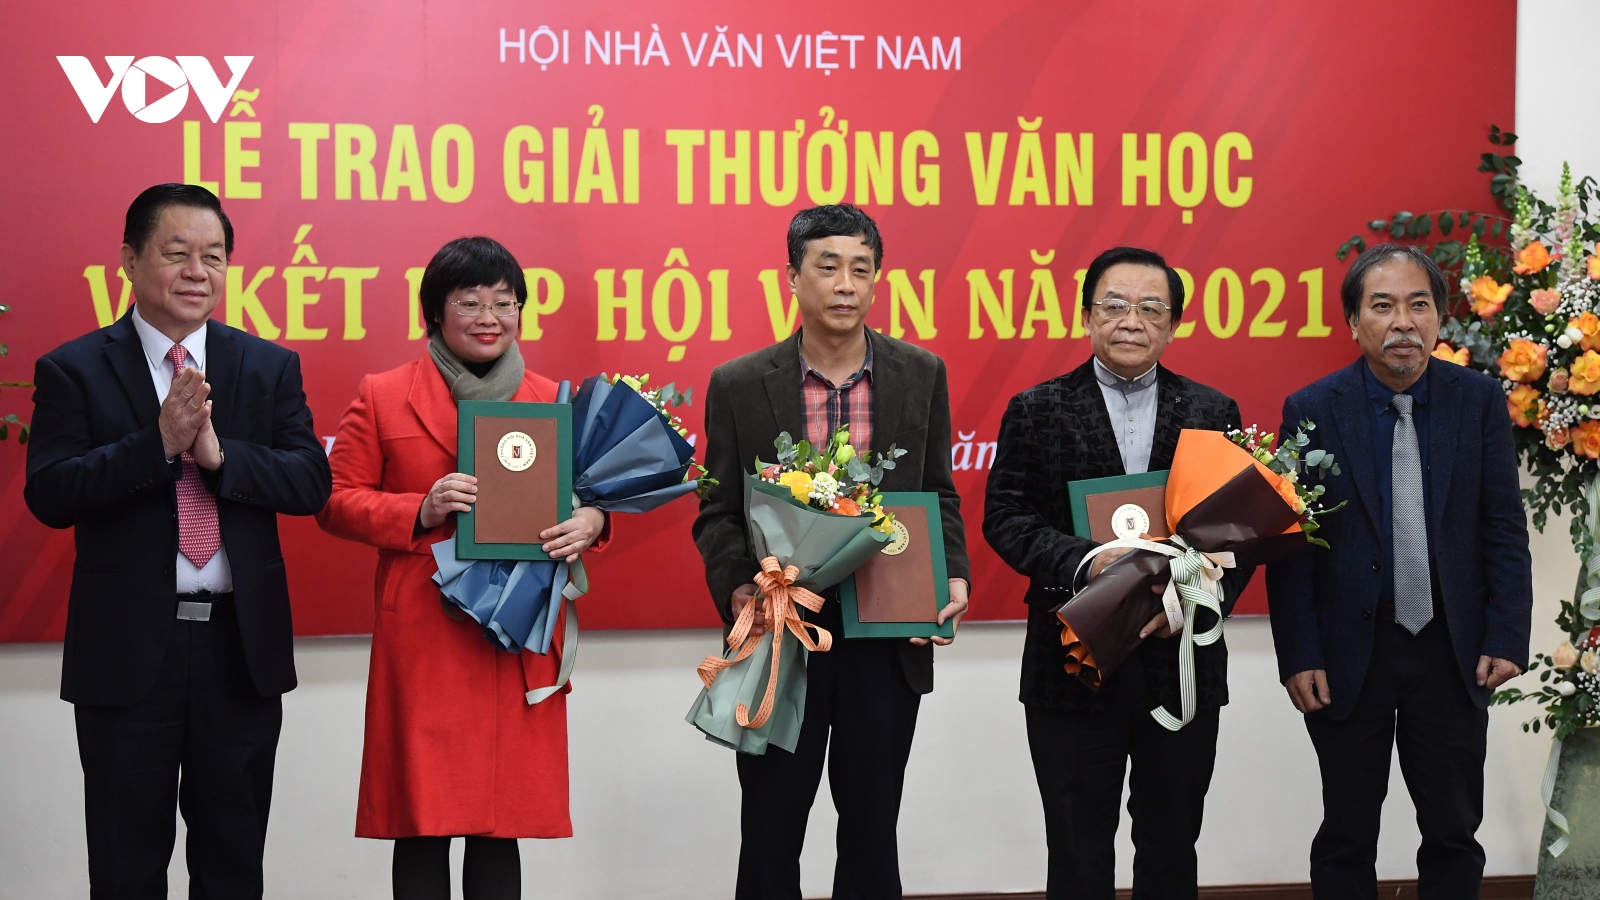 Trao giải thưởng Hội nhà văn Việt Nam năm 2021